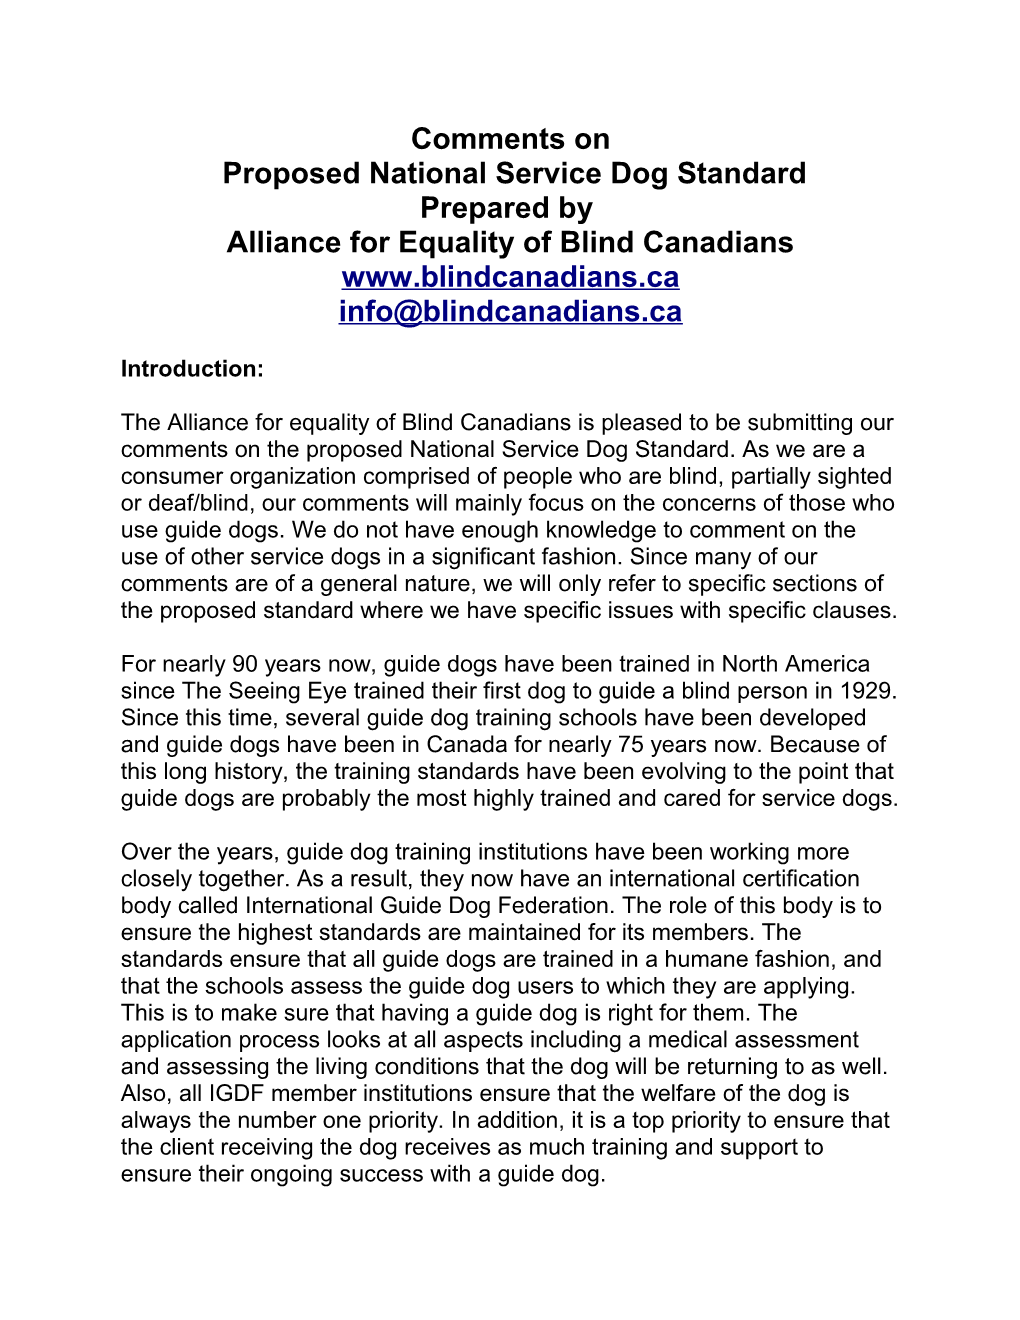 Proposed National Service Dog Standard